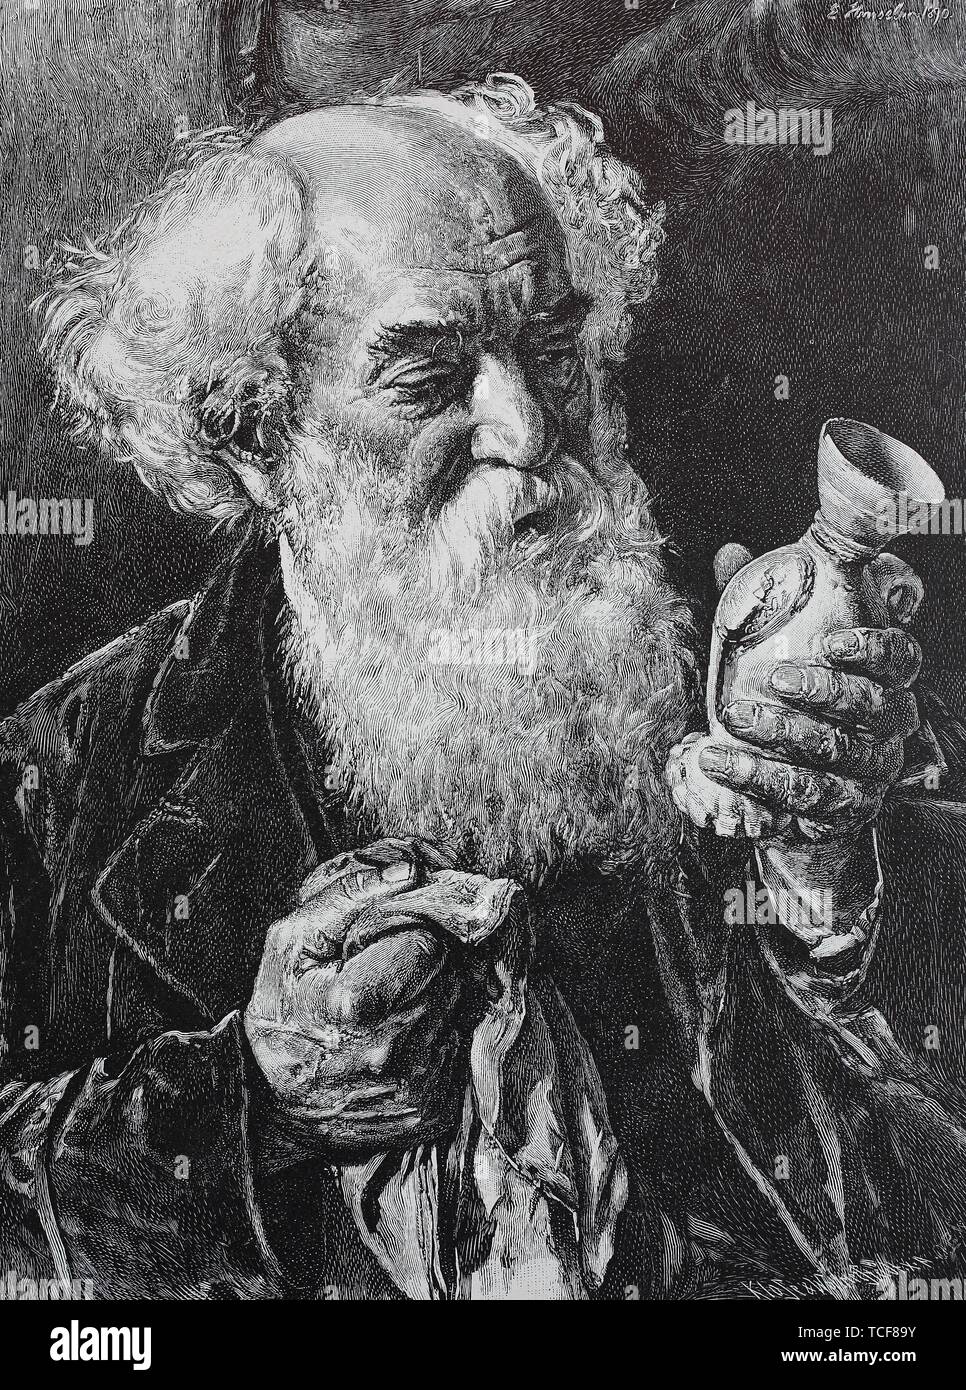 Le collecteur, vieil homme avec une barbe complète, le nettoyage d'un vase en porcelaine de sa collection, 1880, gravure sur bois historique, l'Allemagne, de l'Europe Banque D'Images